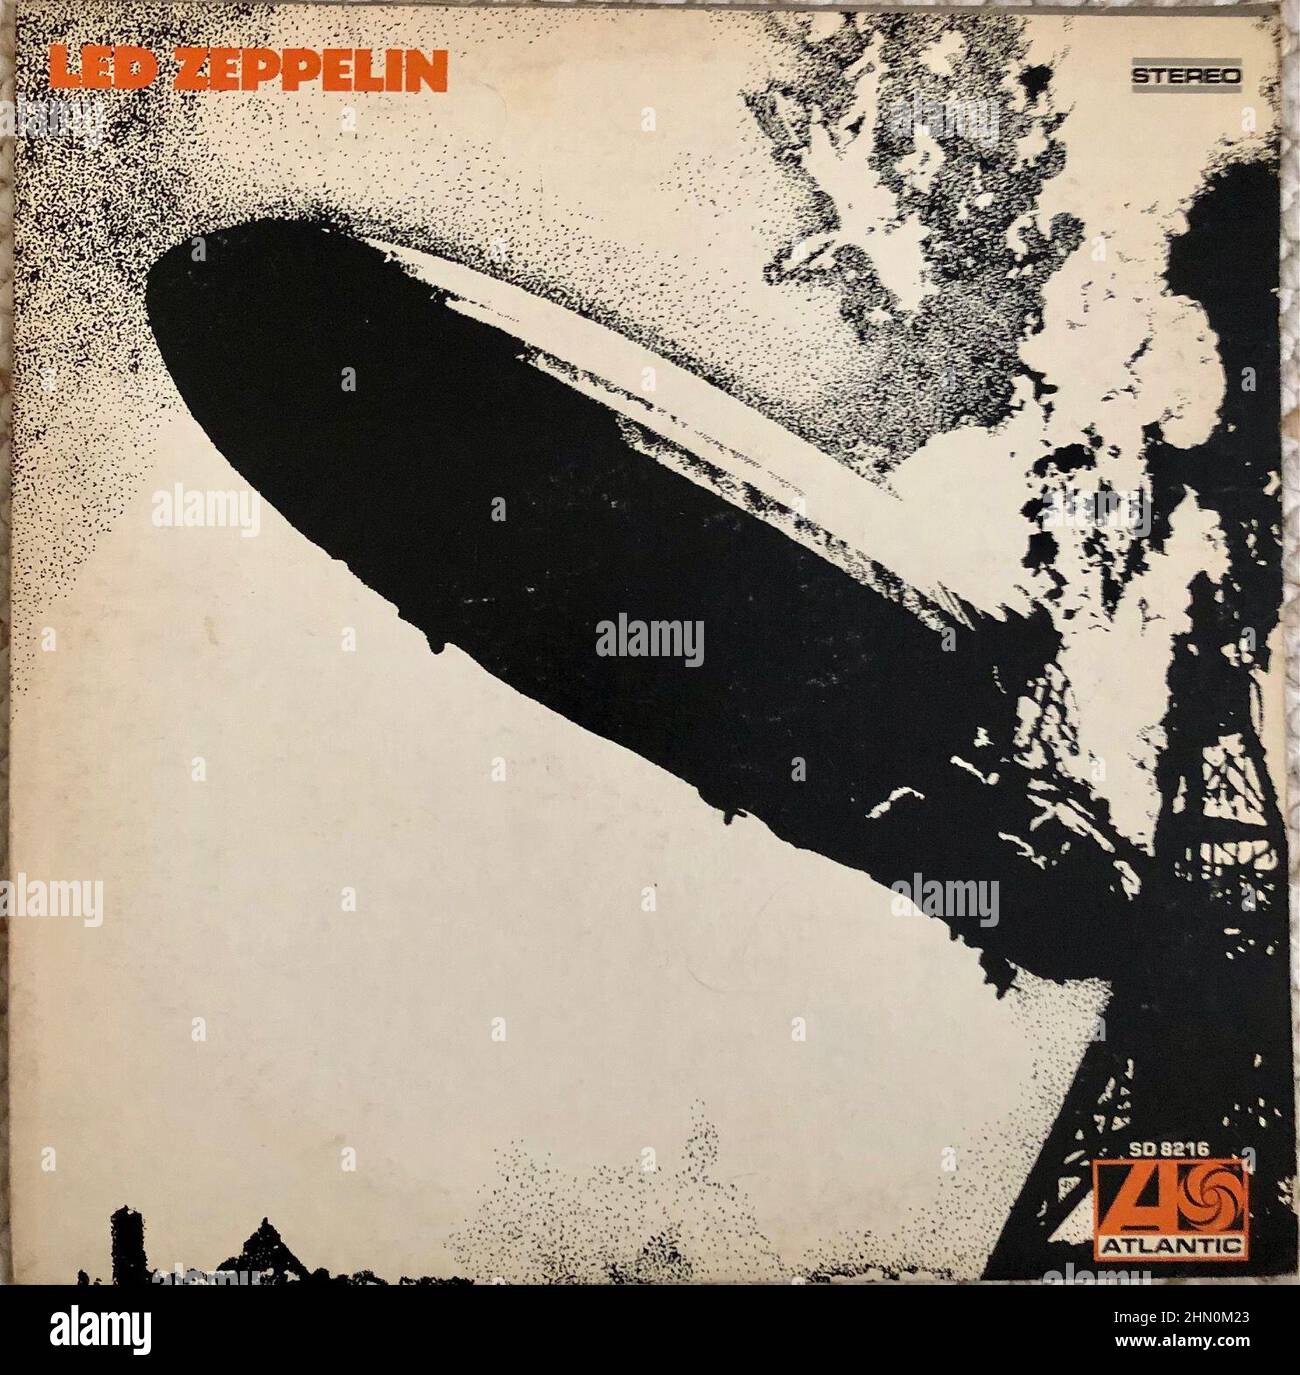 LED Zeppelin, colección de música de rock de los años 1960, cubierta del álbum de rock, álbumes de vinilo de rock clásico, cubiertas vintage Foto de stock